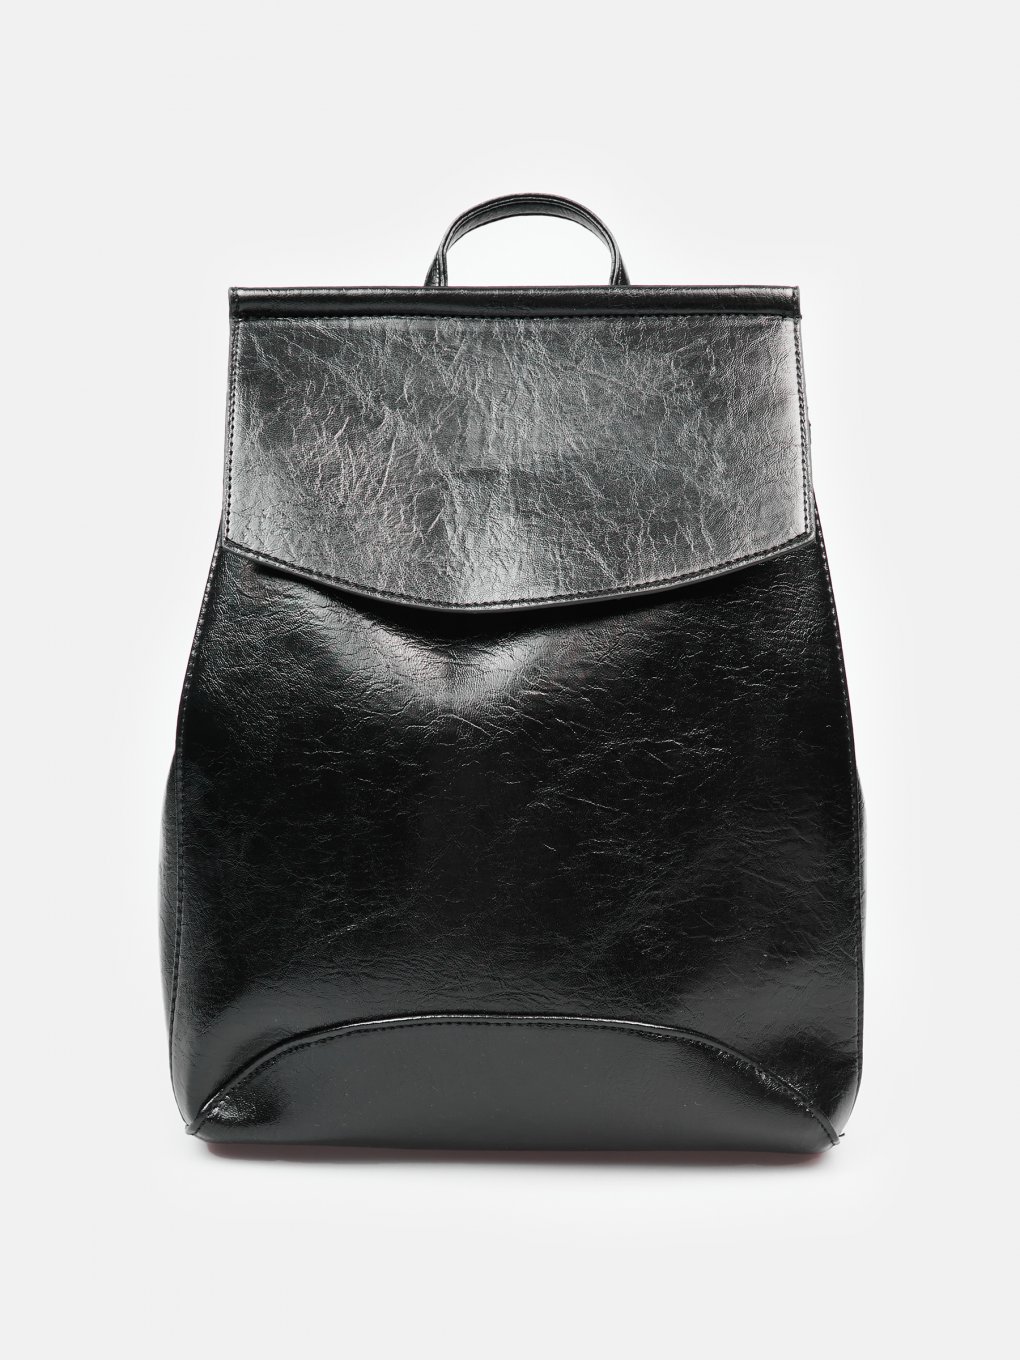 WOMEN FASHION Bags Print Gray Single discount 85% Bershka Bum bag 